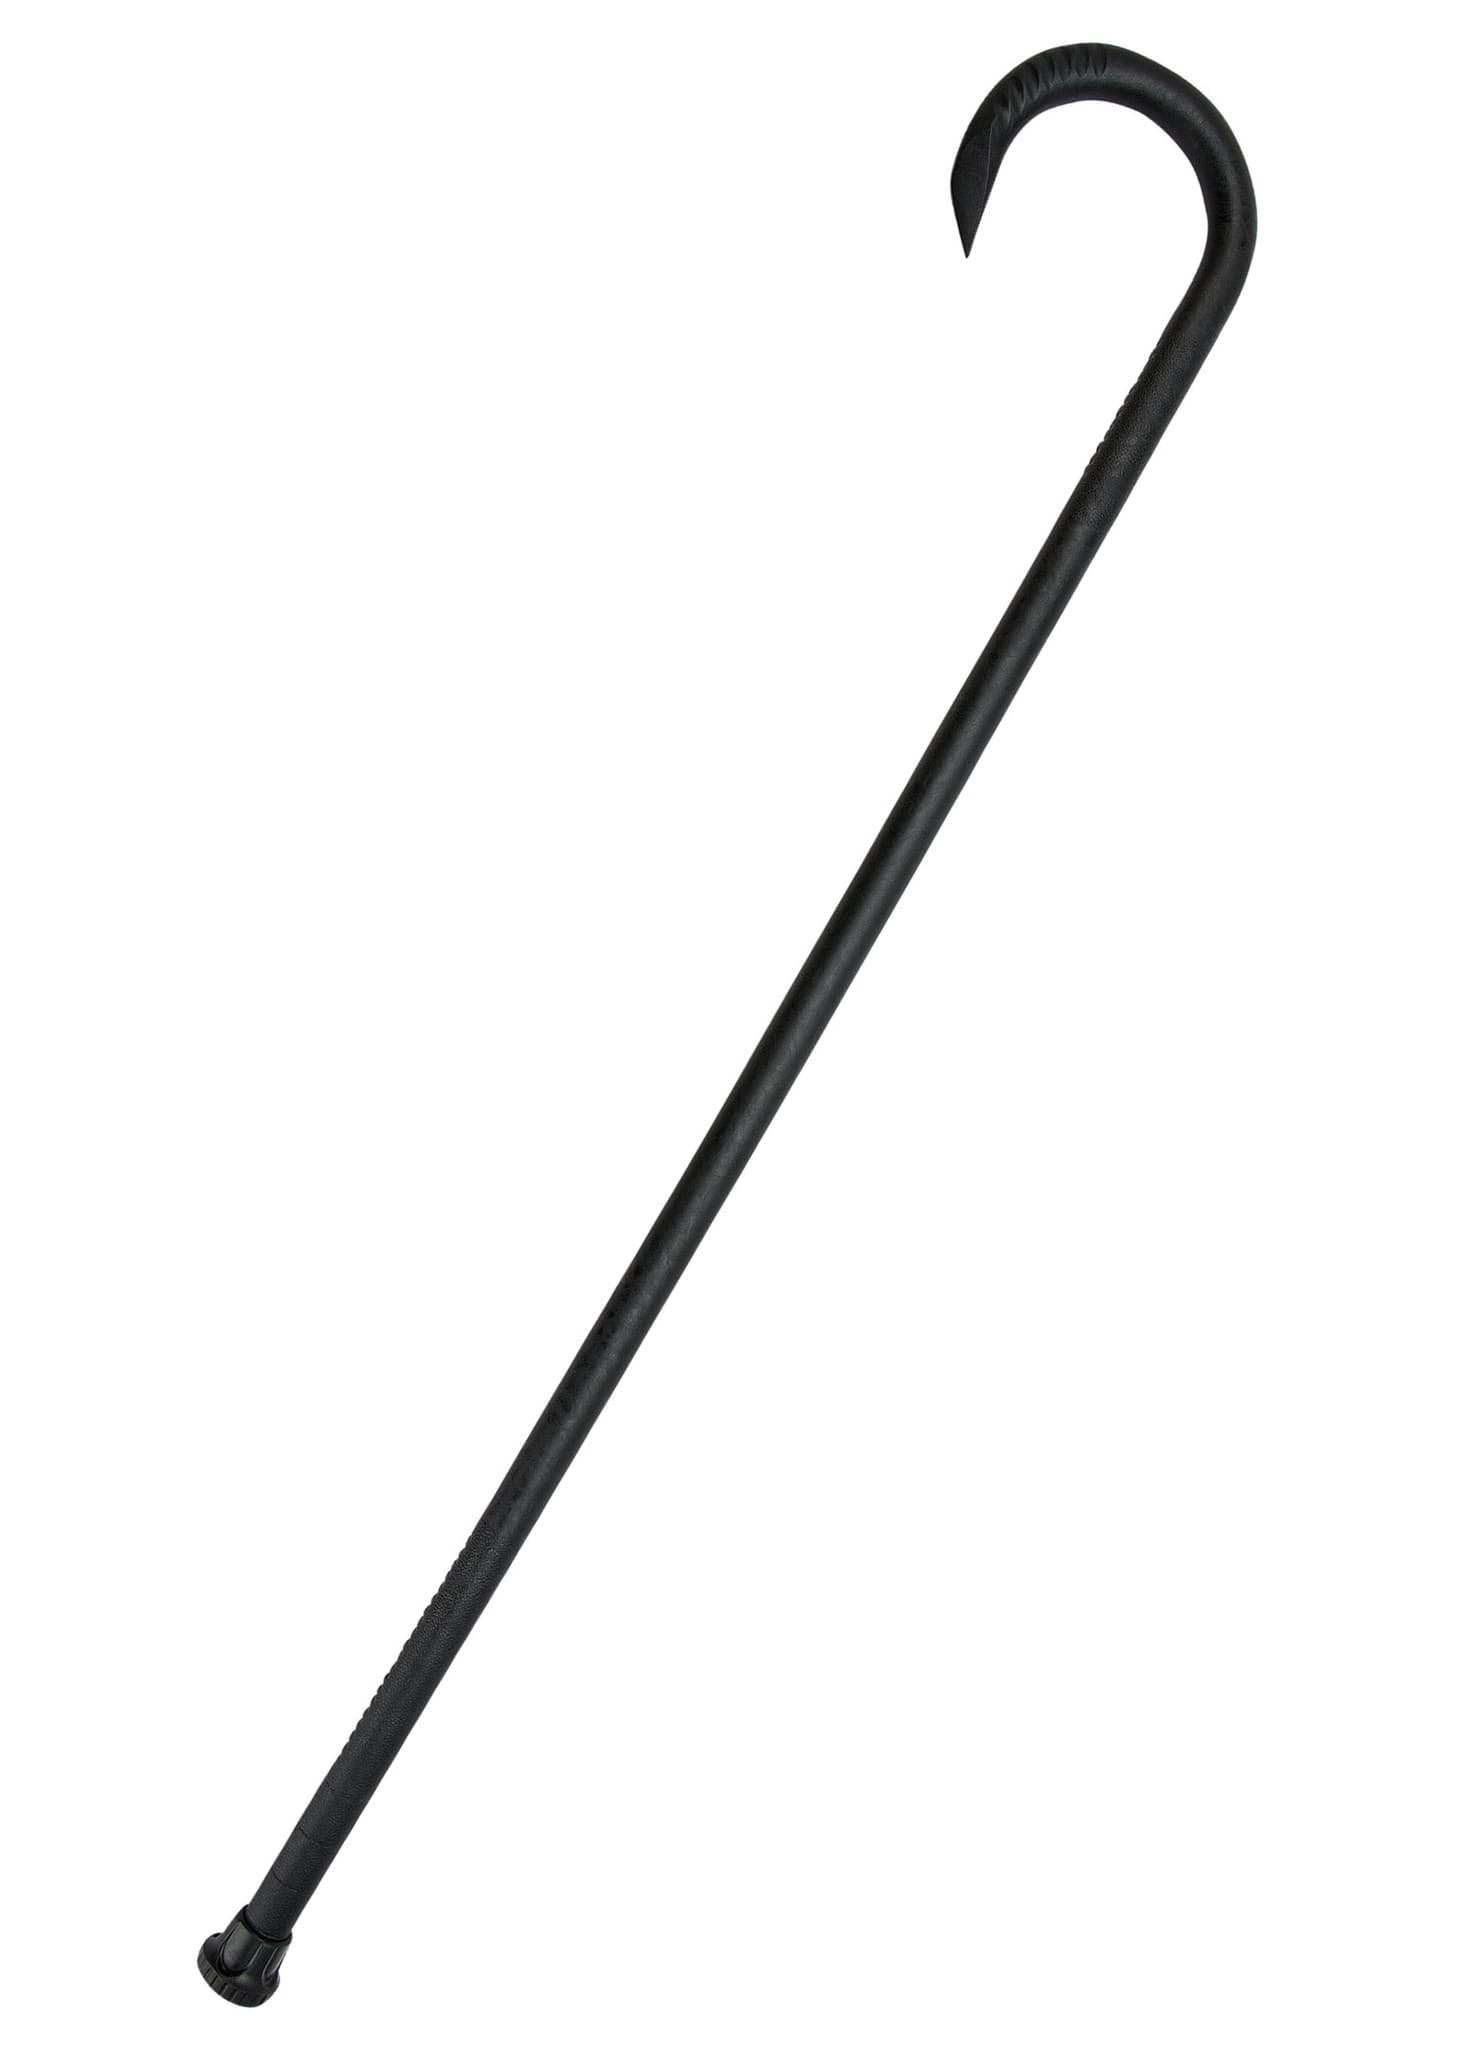 Immagine di United Cutlery - Bastone da passeggio Night Watchman Premium